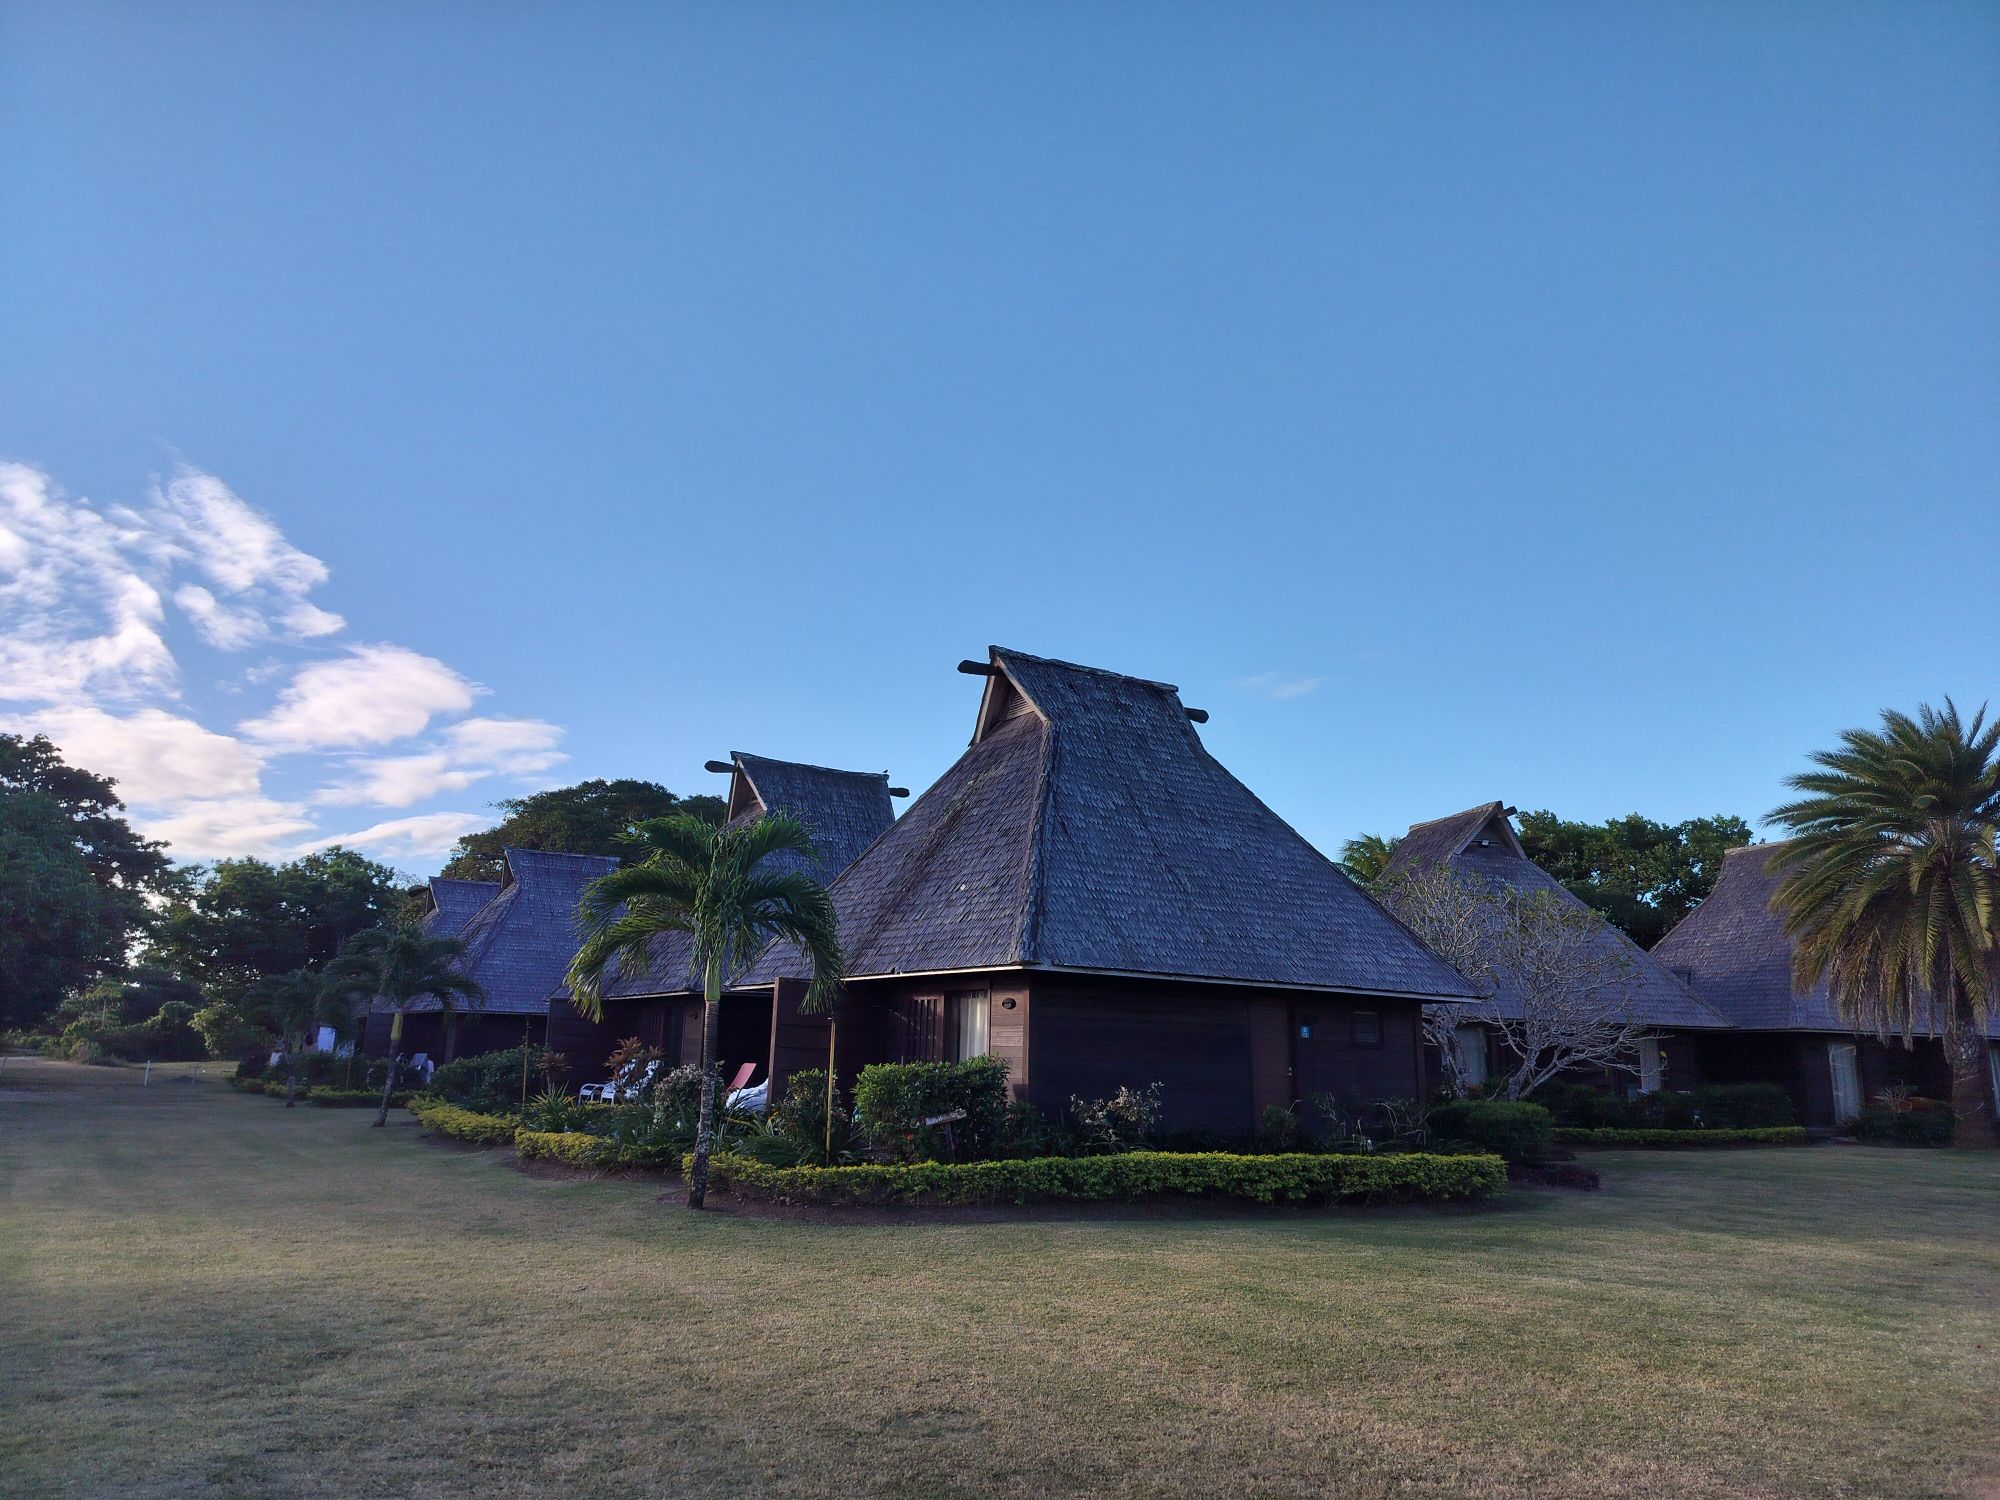 这个酒店其实就在斐济的洲际旁边，走路过去也才2分钟，共享同一片沙滩。价格可以便宜一半左右。当然，你也